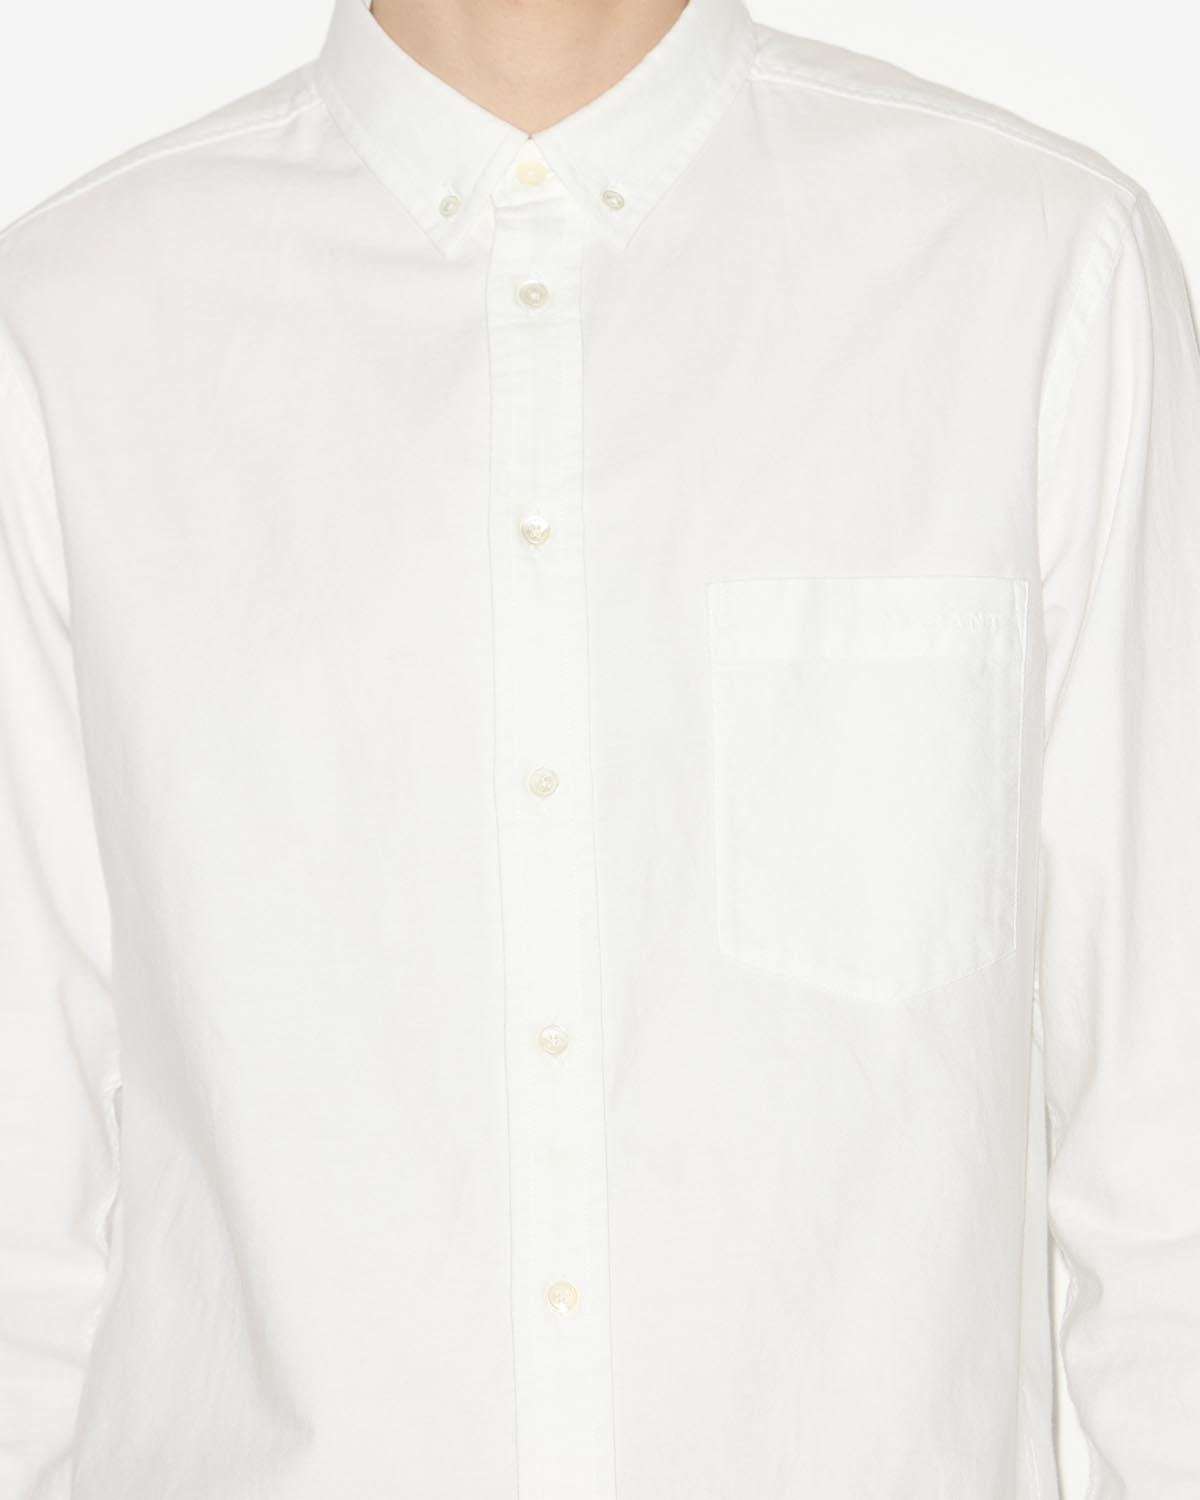 Jasolo 셔츠 Man 하얀색 2